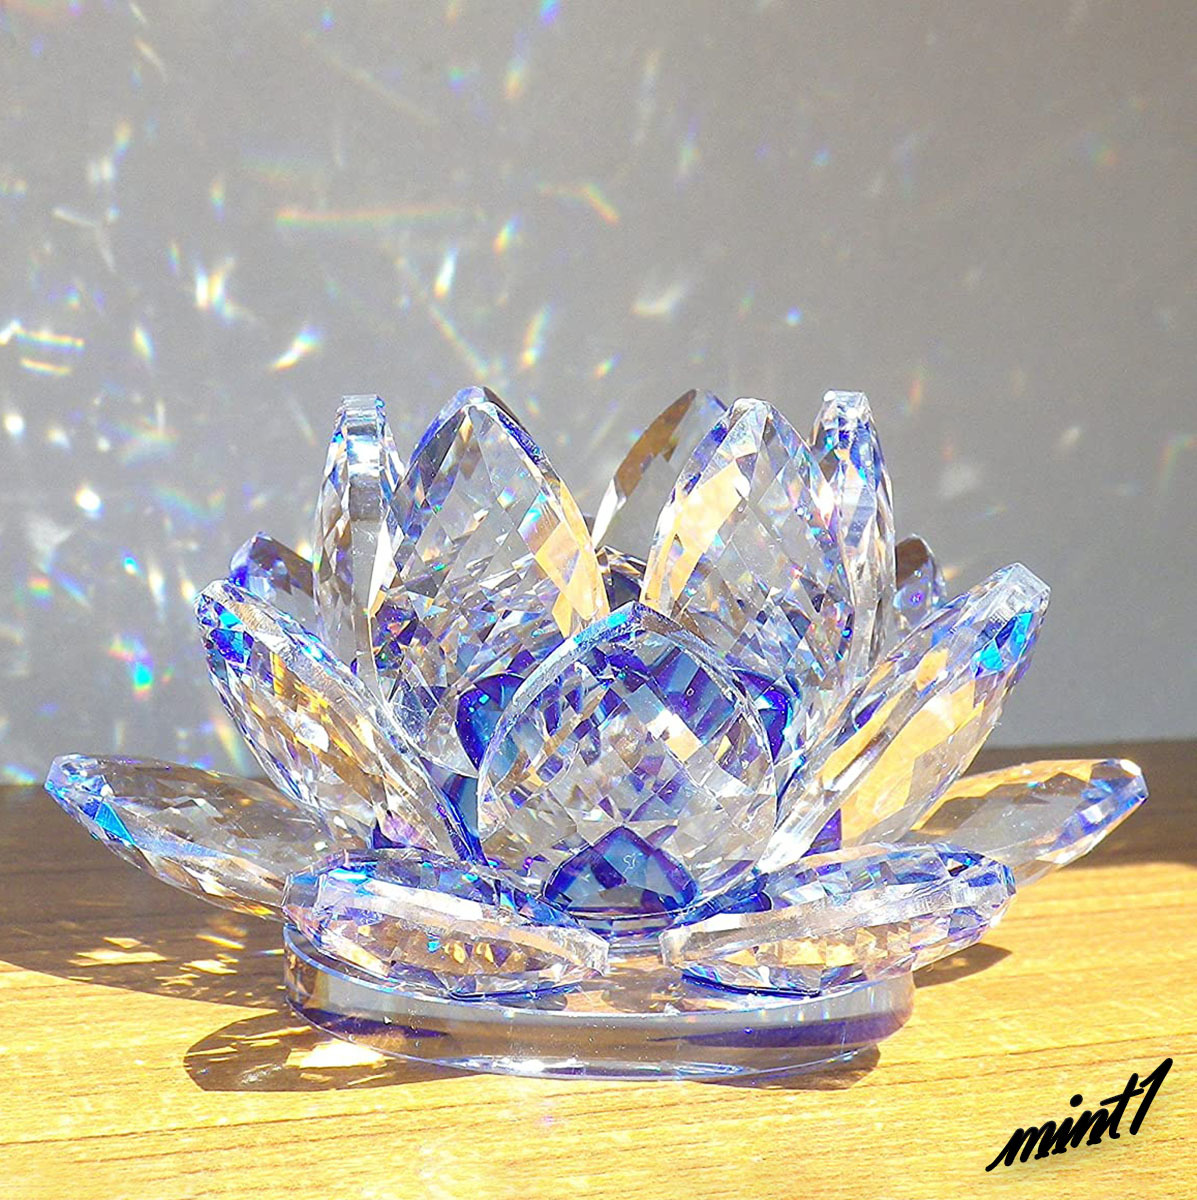 [Purifier la malchance] Objet bleu lotus Feng Shui travail chance étude chance attrape-soleil ornement intérieur verre cristal couleur bleue, Articles faits à la main, intérieur, marchandises diverses, ornement, objet